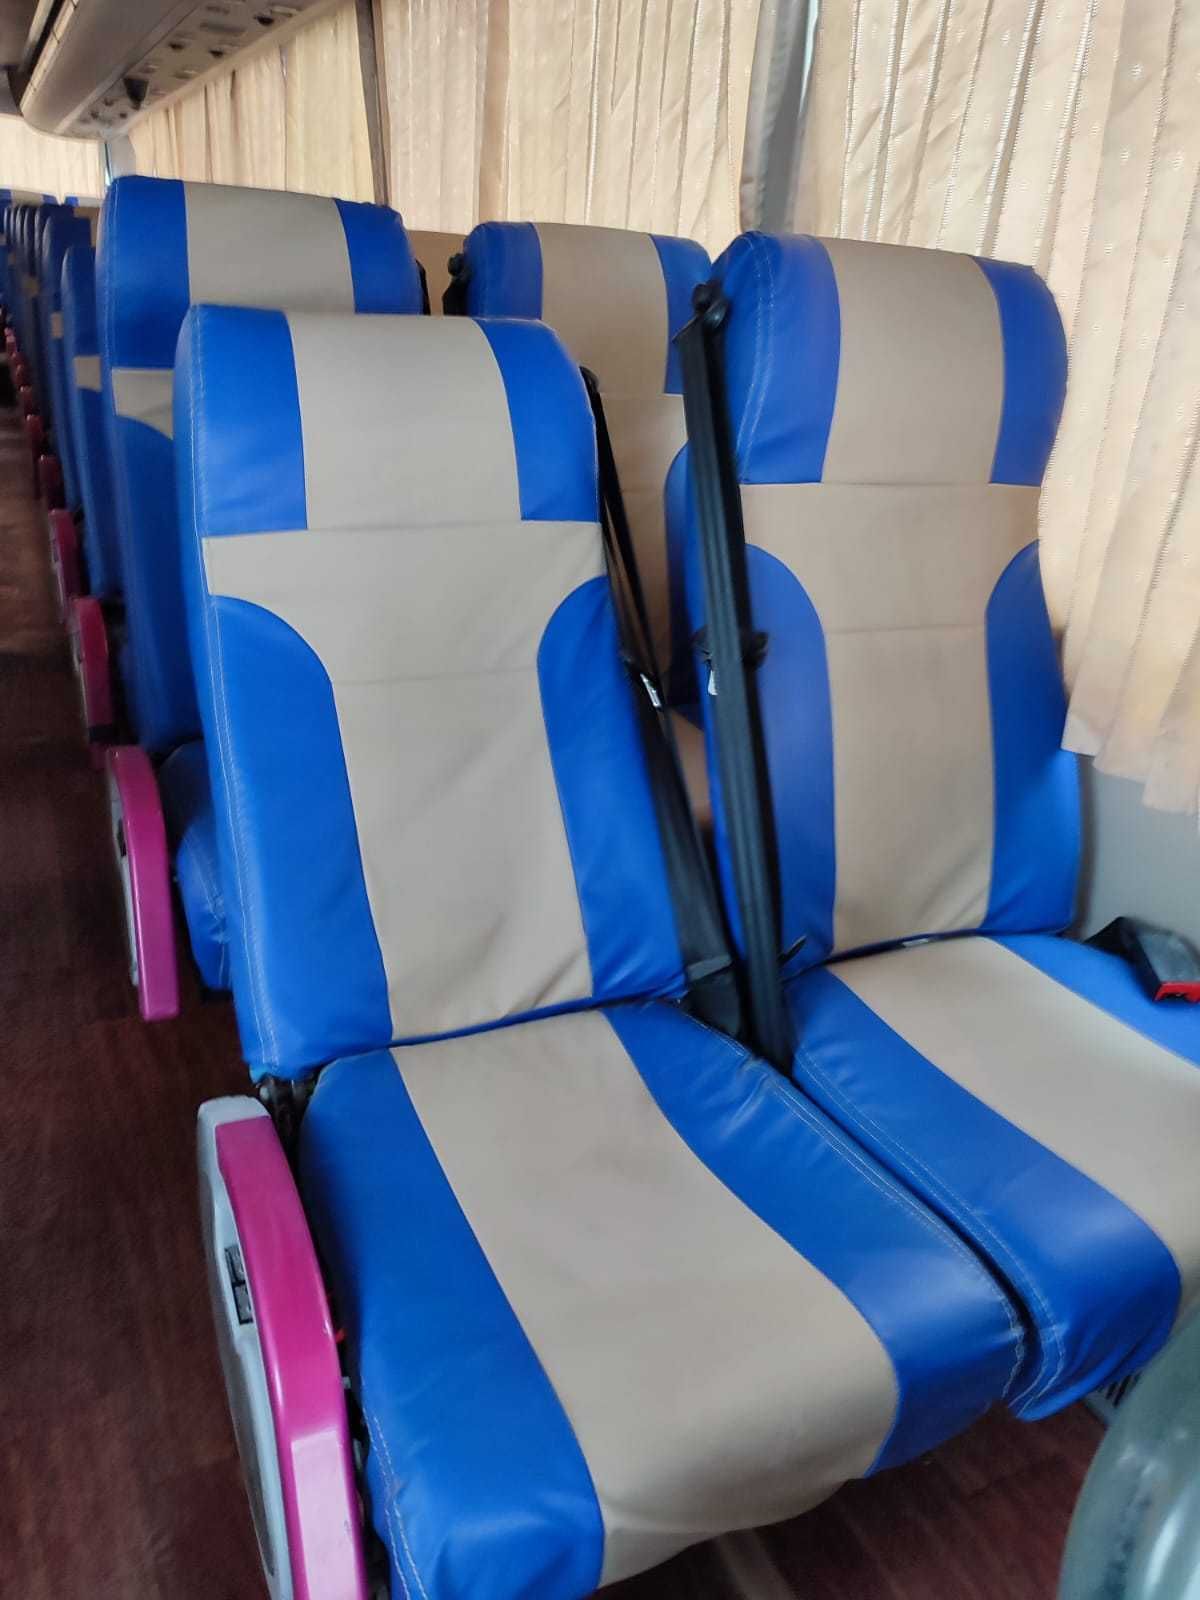 Продается автобус 50 мест Кинг Лонг туристический в отличном состоянии